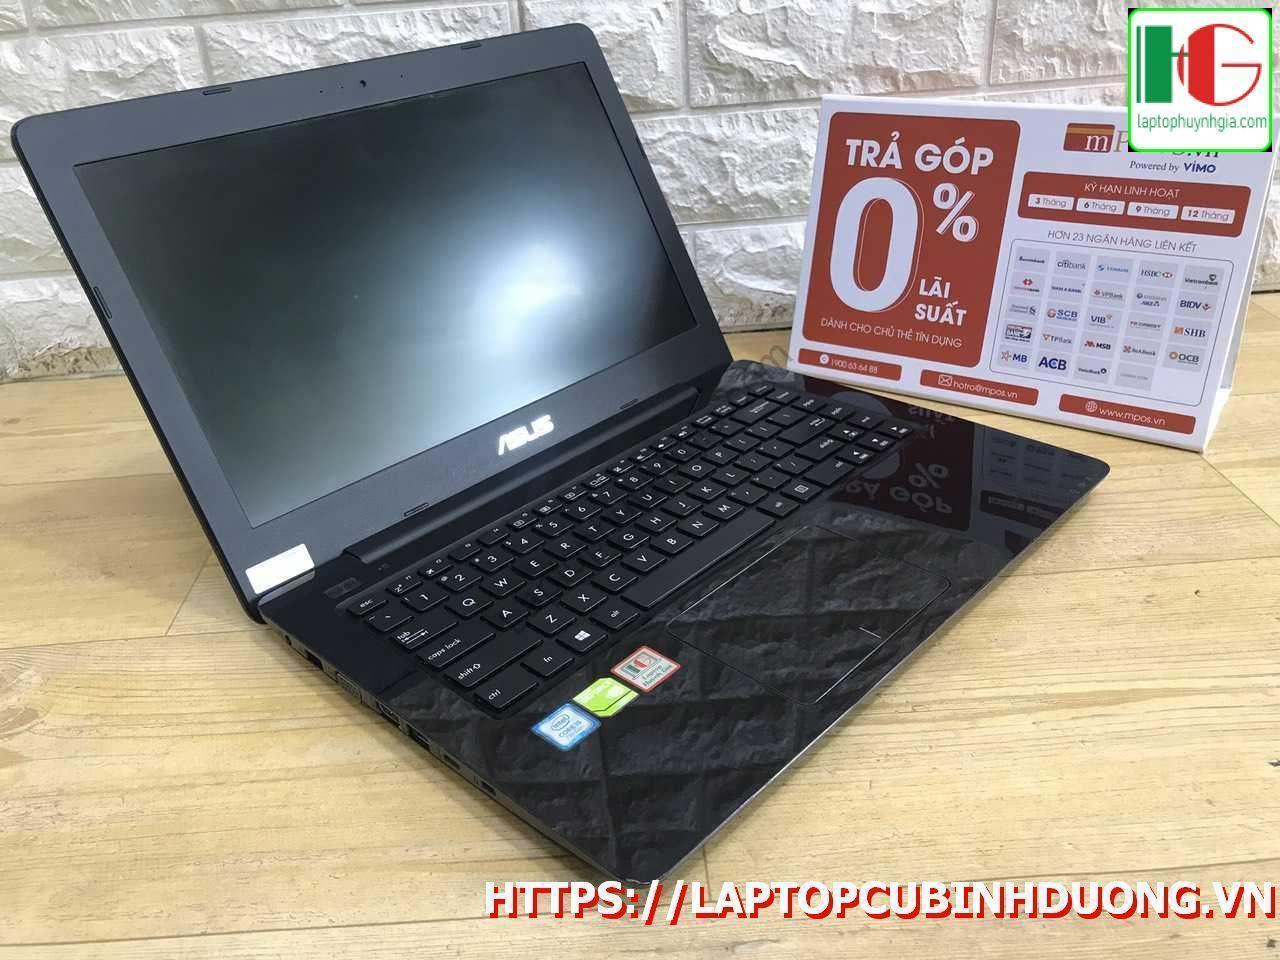 Laptop Asus X456 I5 7200u 4g Ssd 128g Nvidia Gt930mx Laptopcubinhduong.vn [kích Thước Gốc] Result